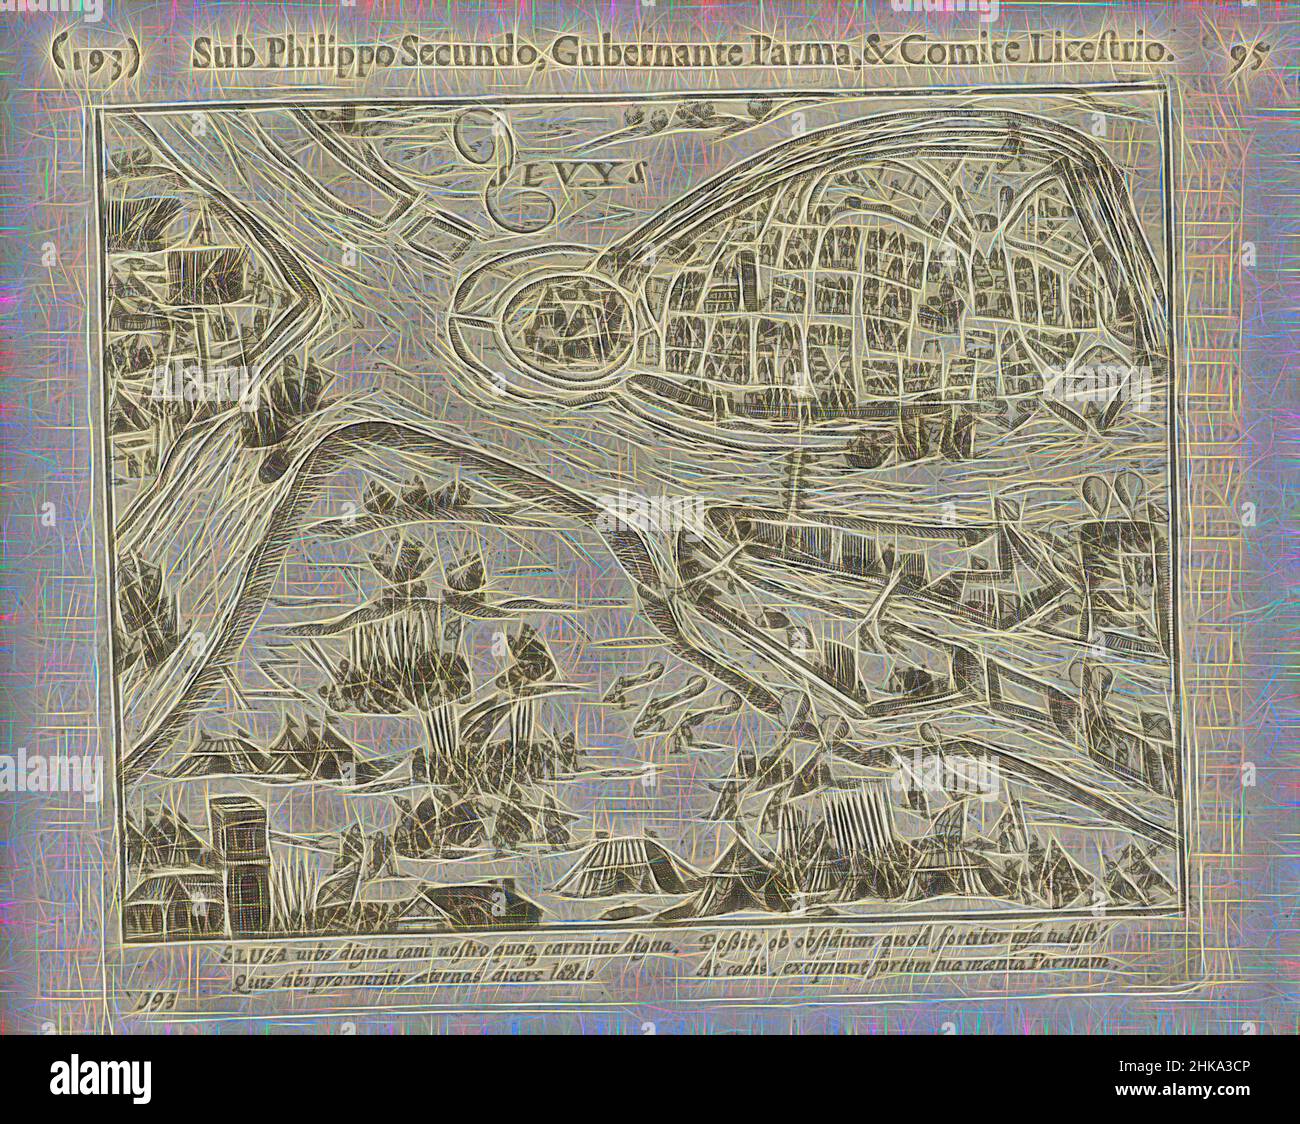 Inspirado por Siege de Sluis por Parma, 1587, Siege y captura de Sluis por  el ejército de Parma, 5 de agosto de 1587. Vista de la ciudad con las  posiciones militares del